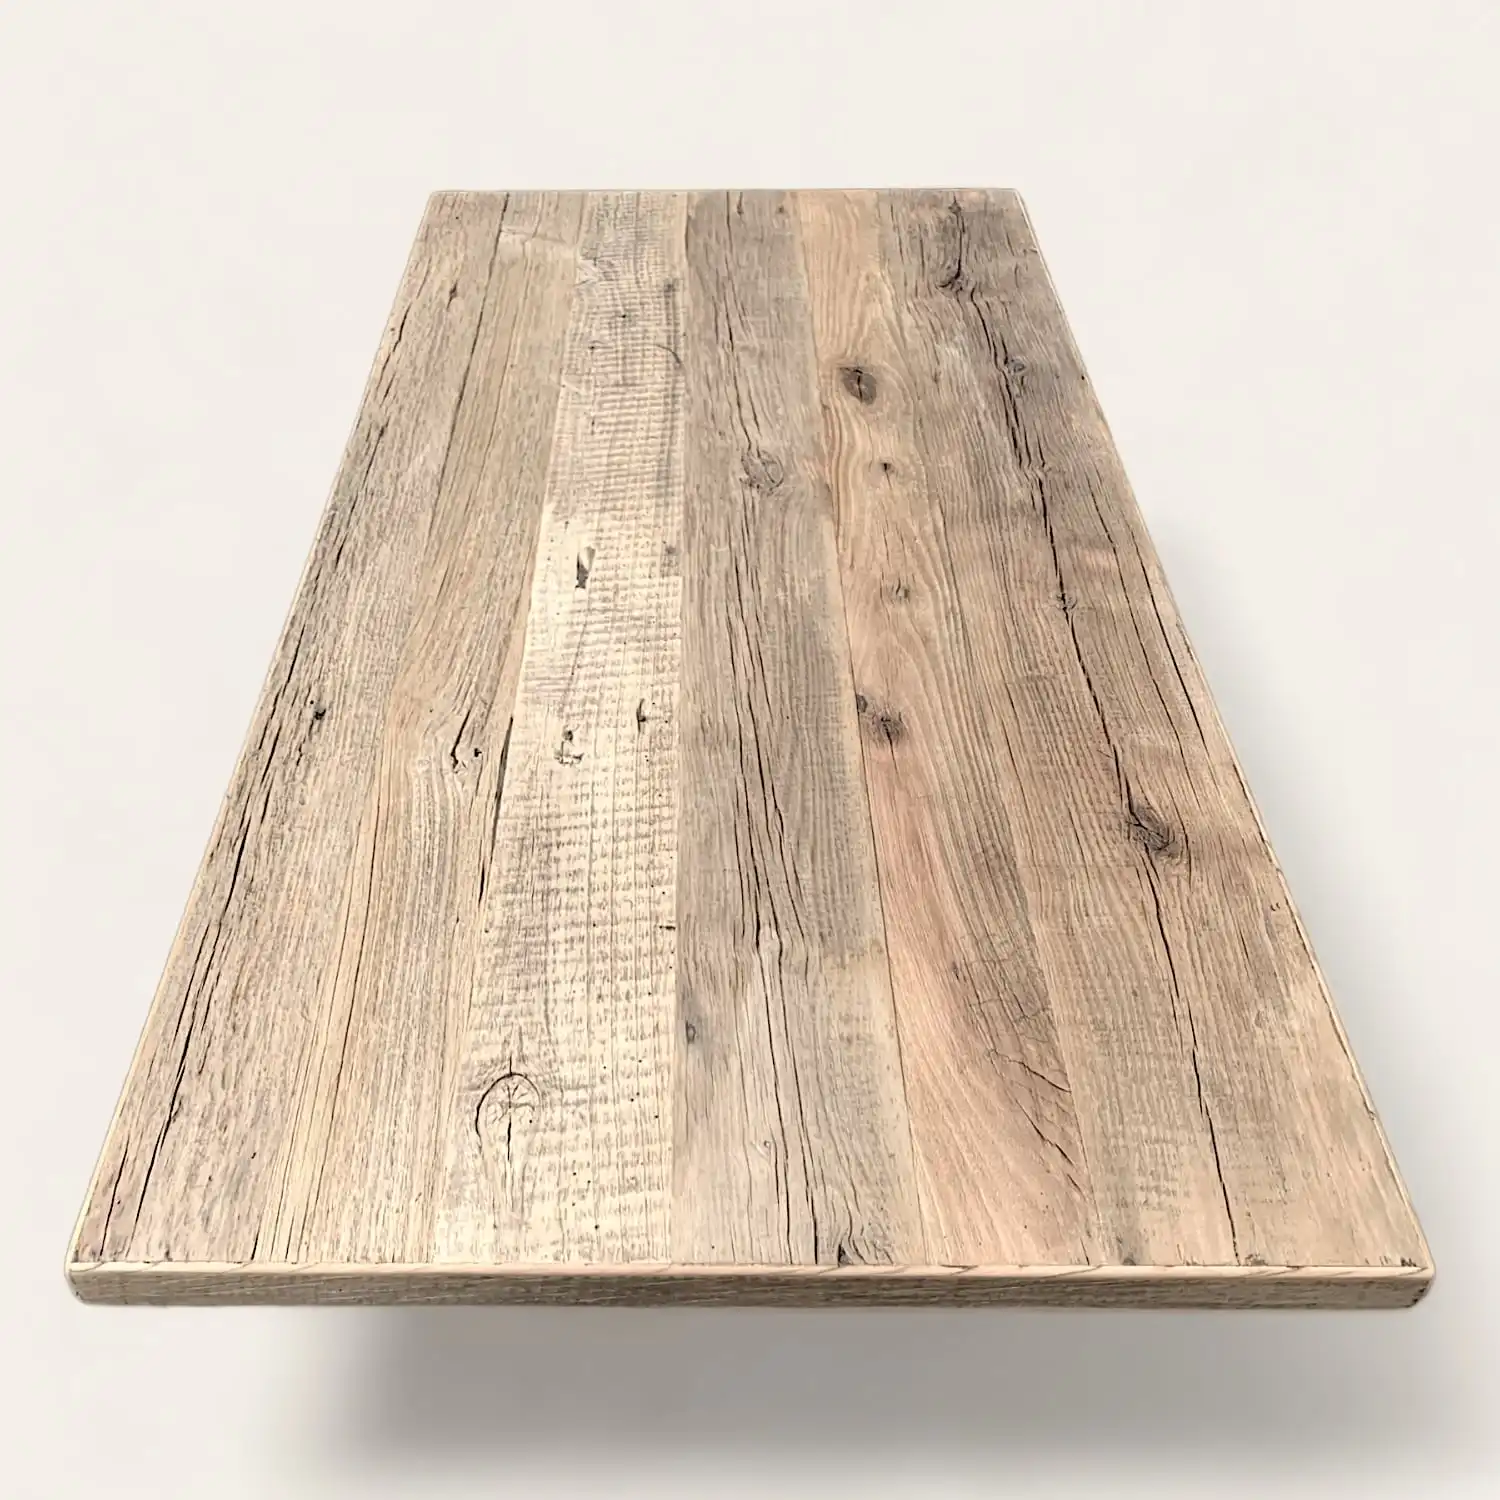  Un plateau de table rustique en bois sur un fond blanc. 